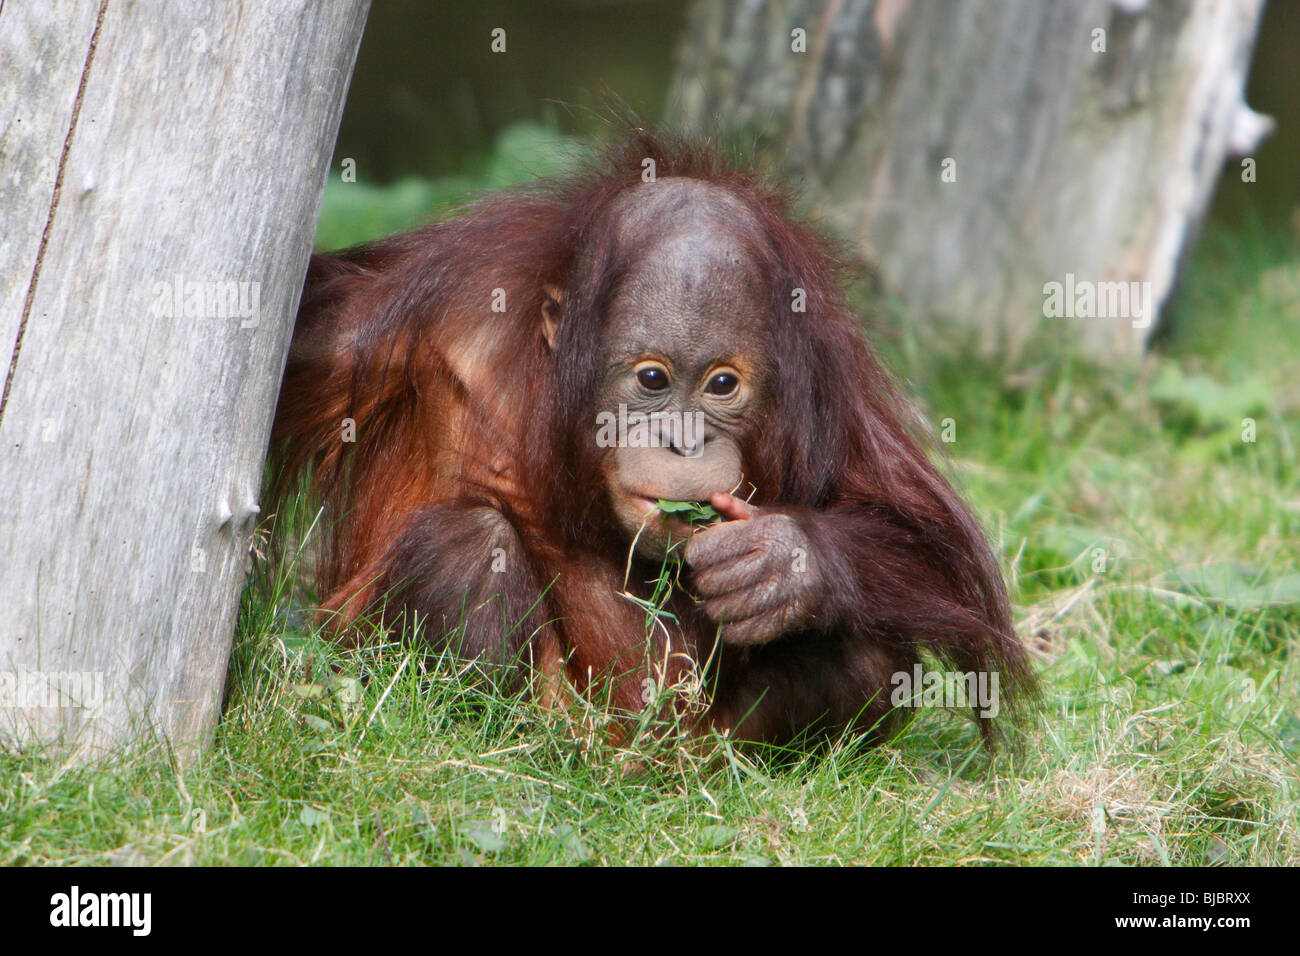 Les orangs-outans (Pongo pygmaeus), bayby assis sur l'herbe, de mâcher de la masse Banque D'Images